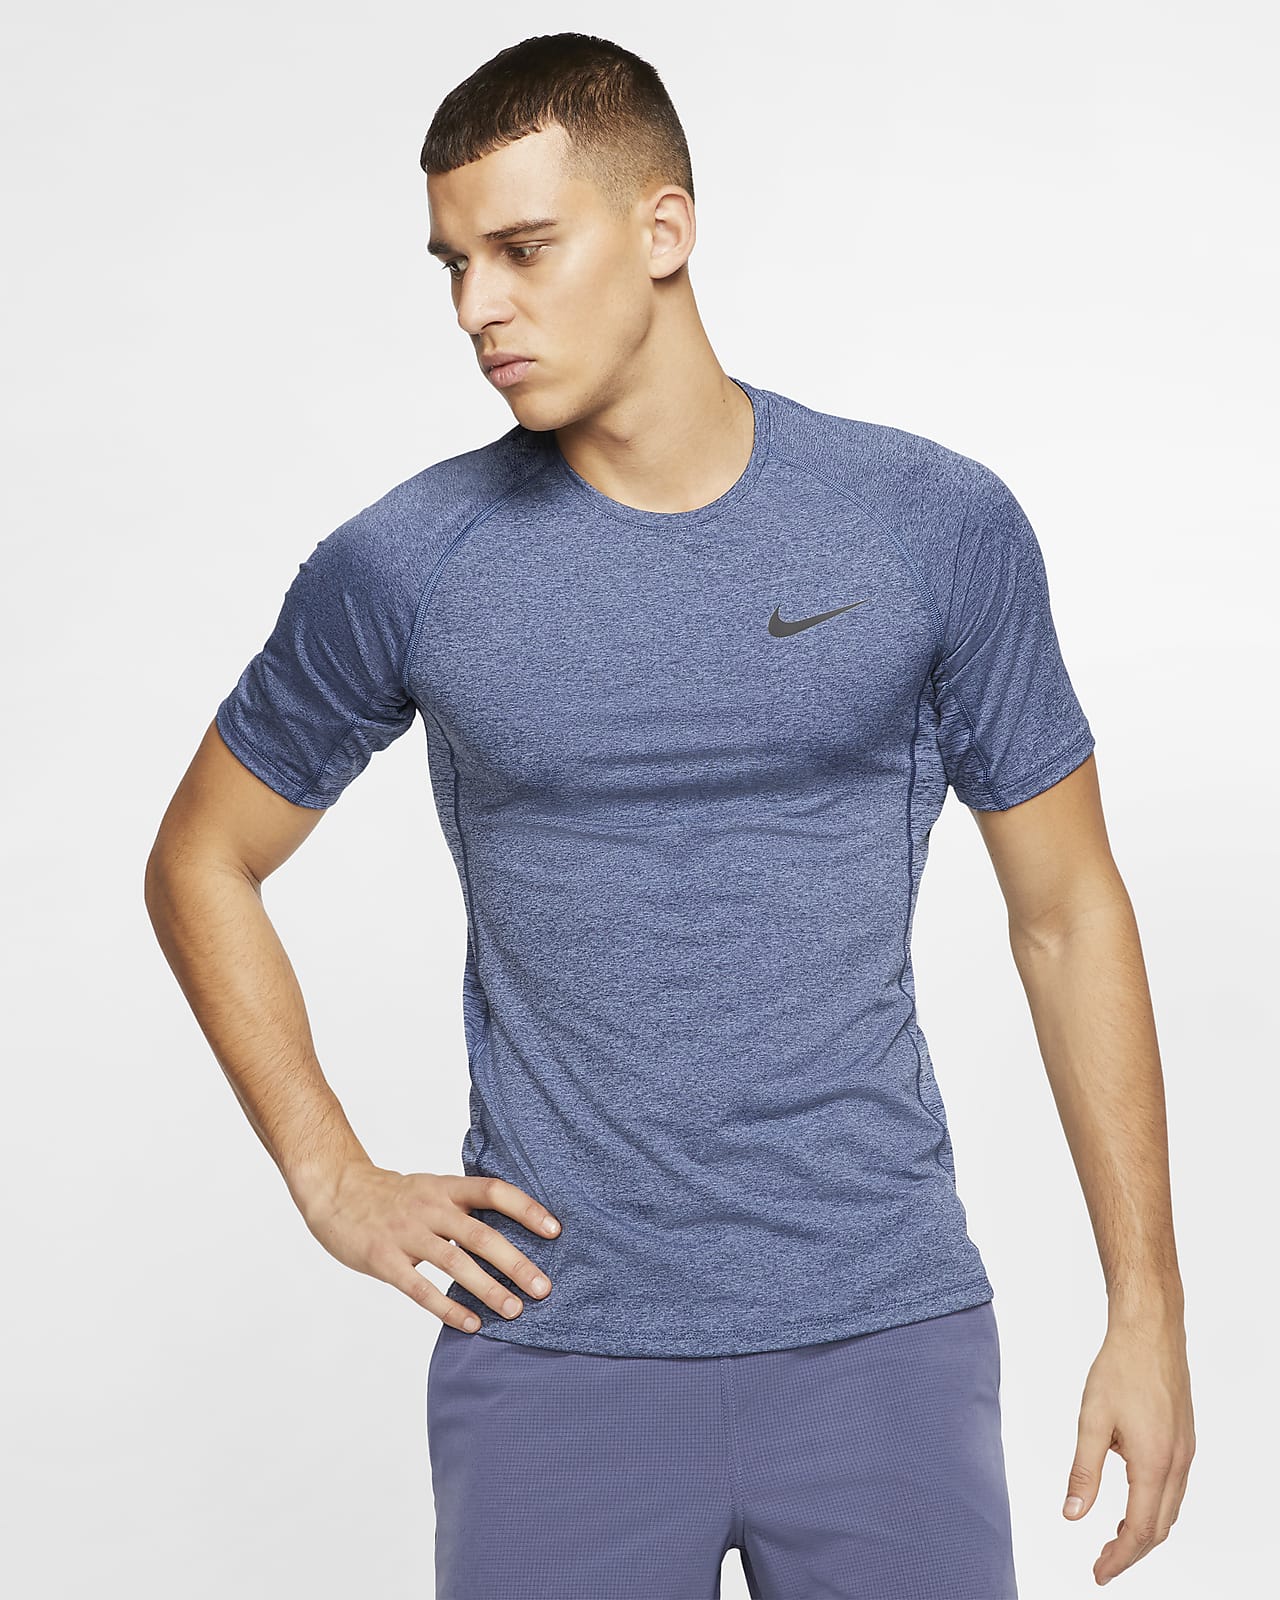 iets werkzaamheid Beschietingen Nike Pro Men's Short-Sleeve Top. Nike.com